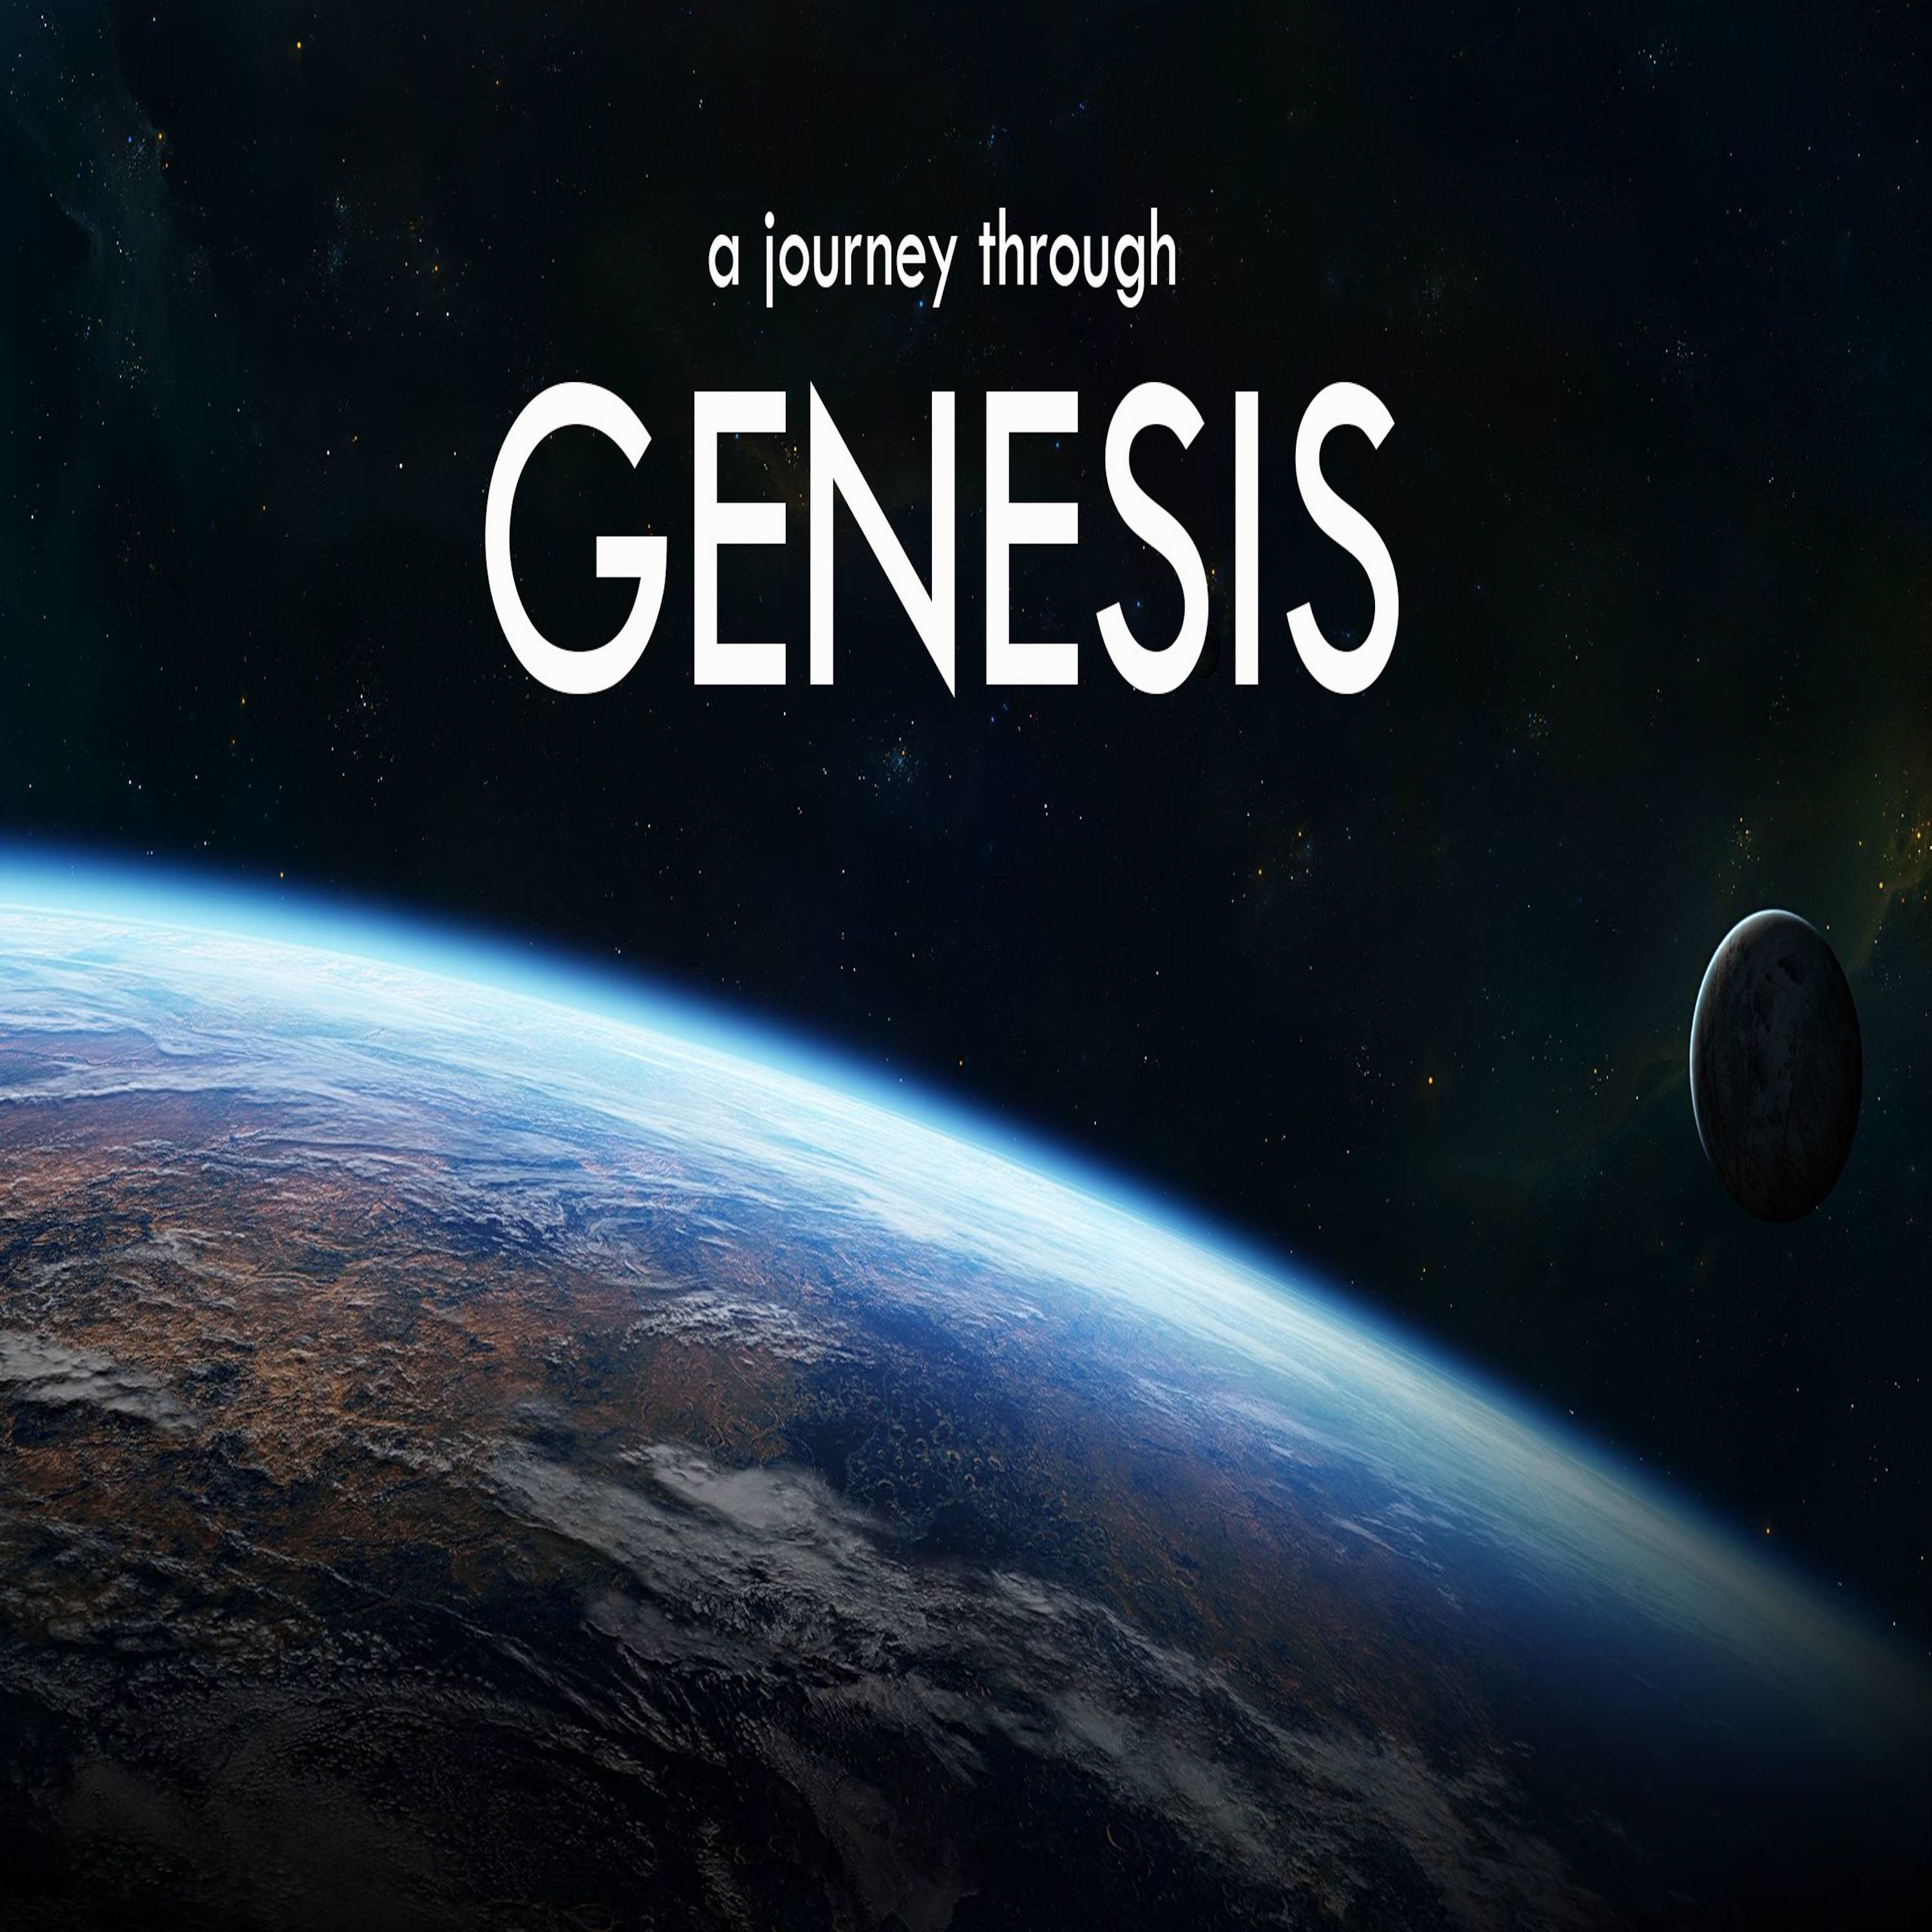 Genesis Creation Series: Day One of Creation (Genesis 1:1-5)